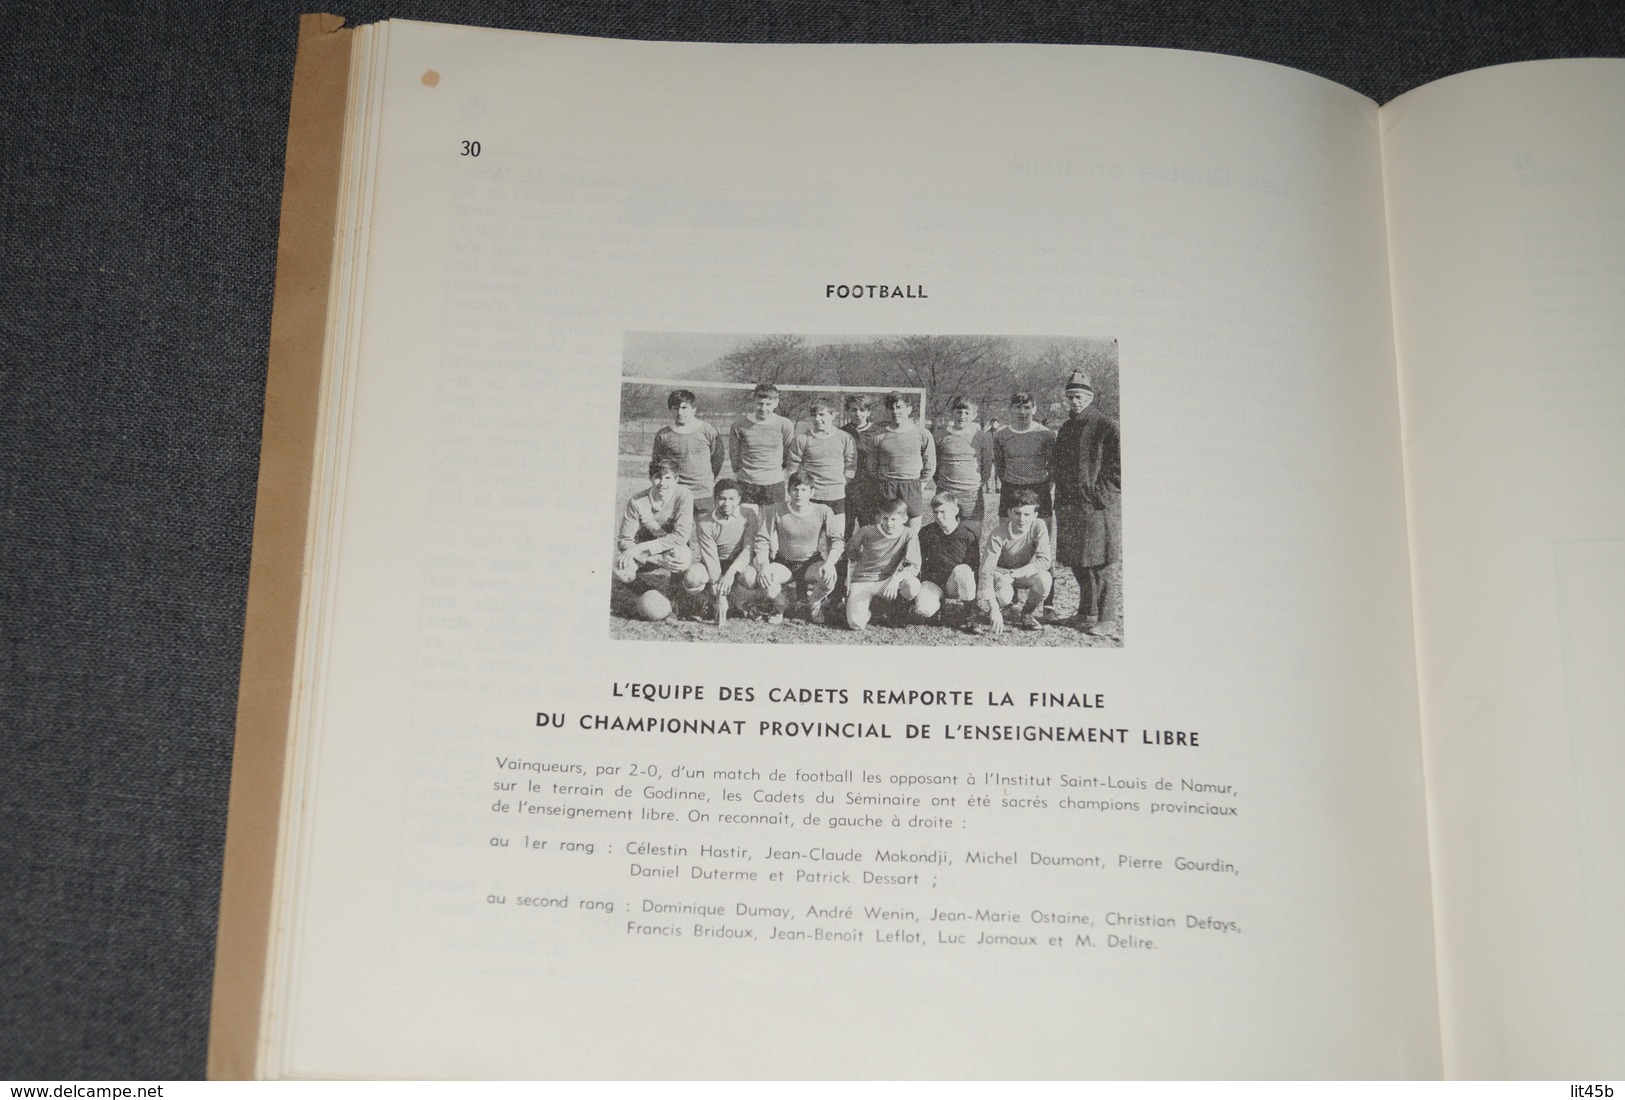 ouvrage Floreffe bulletin des anciens Juillet 1969 ,complet 34 pages,20,5 Cm. sur 19,5 Cm.